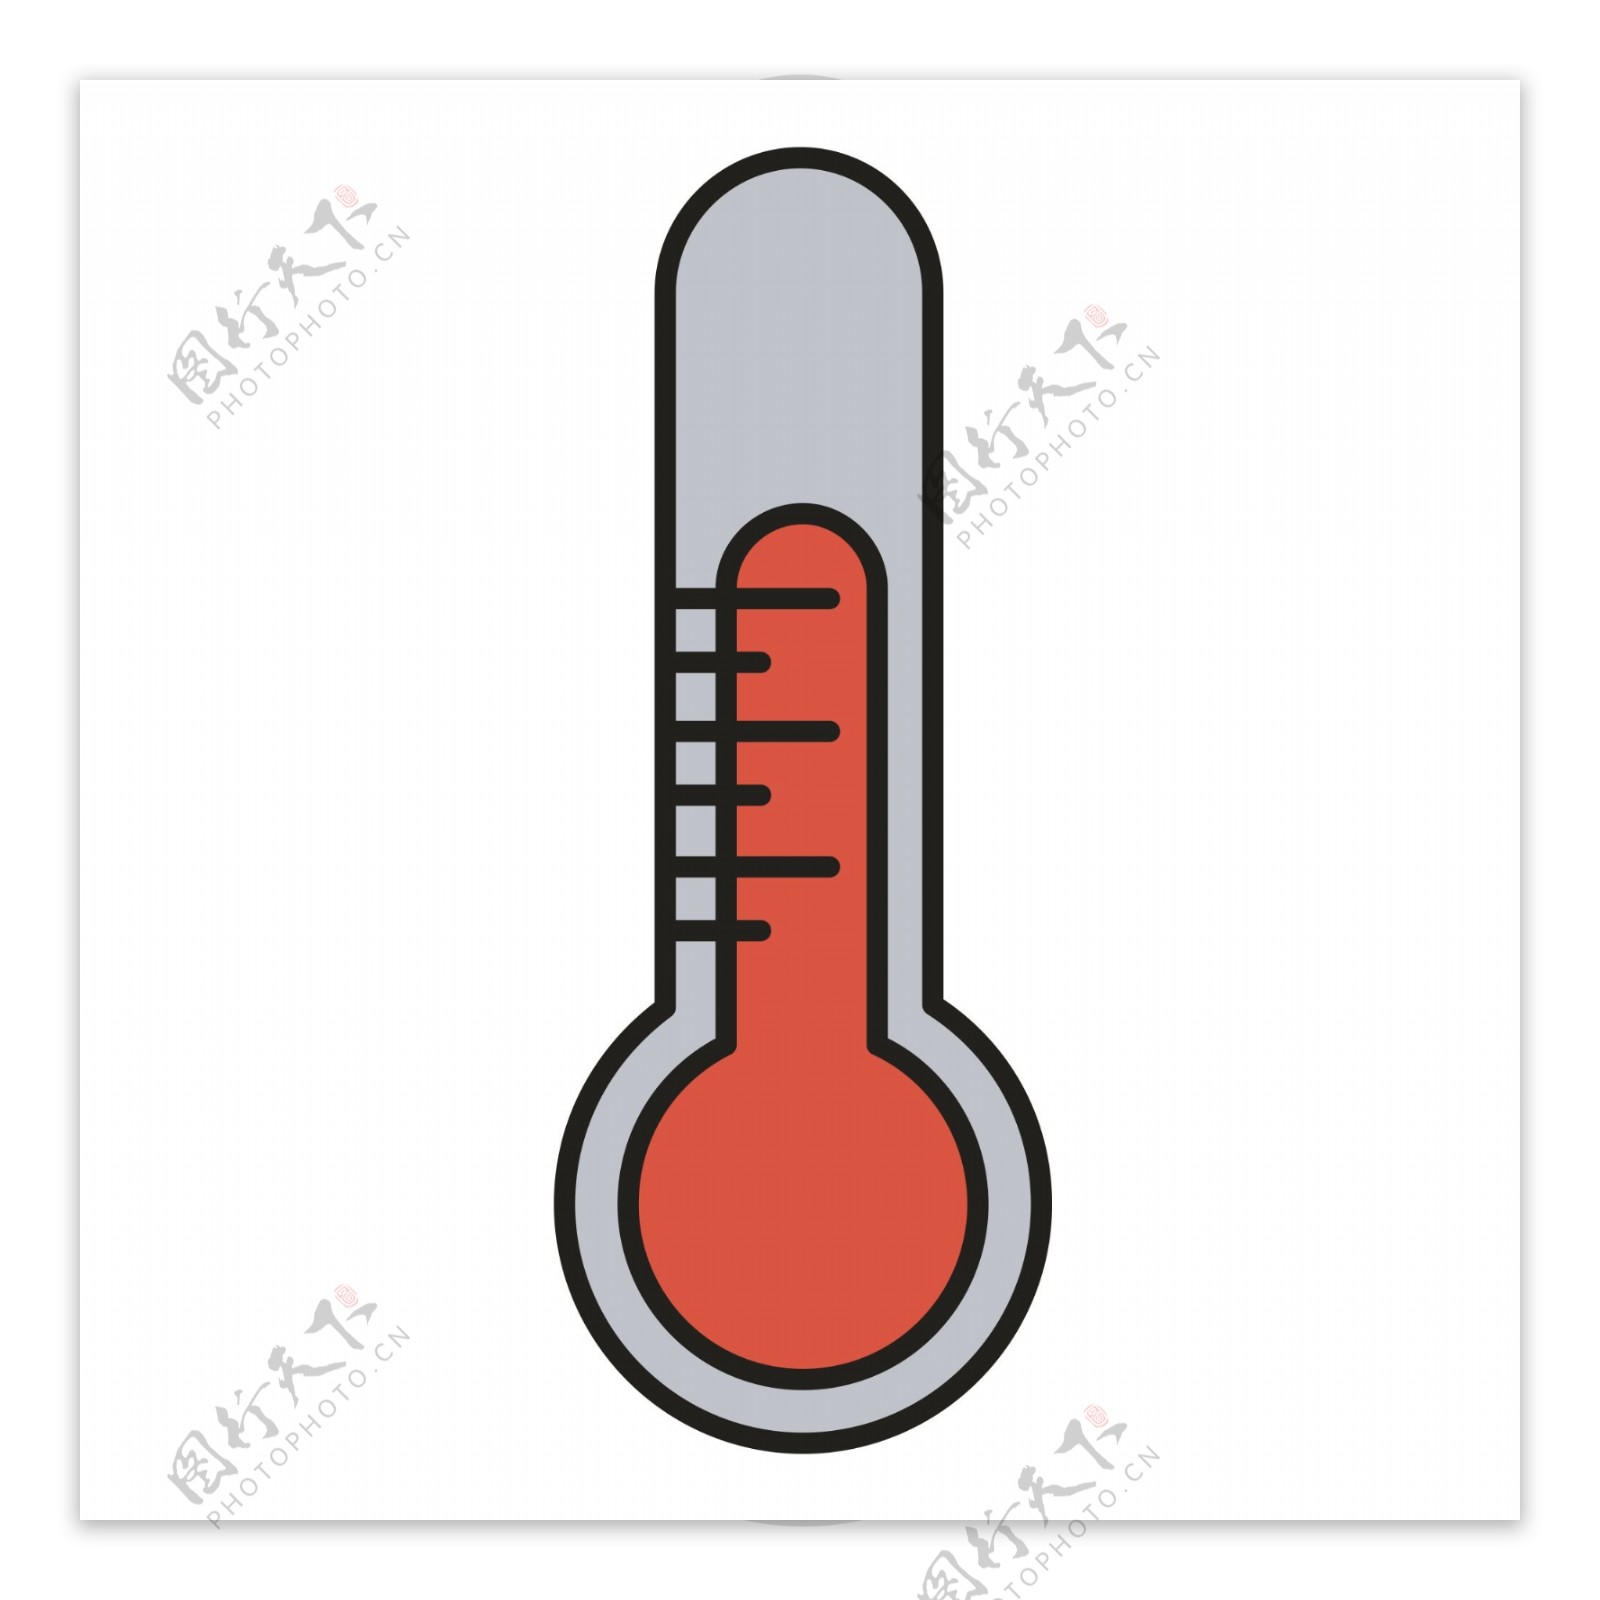 一个显示高温的温度计